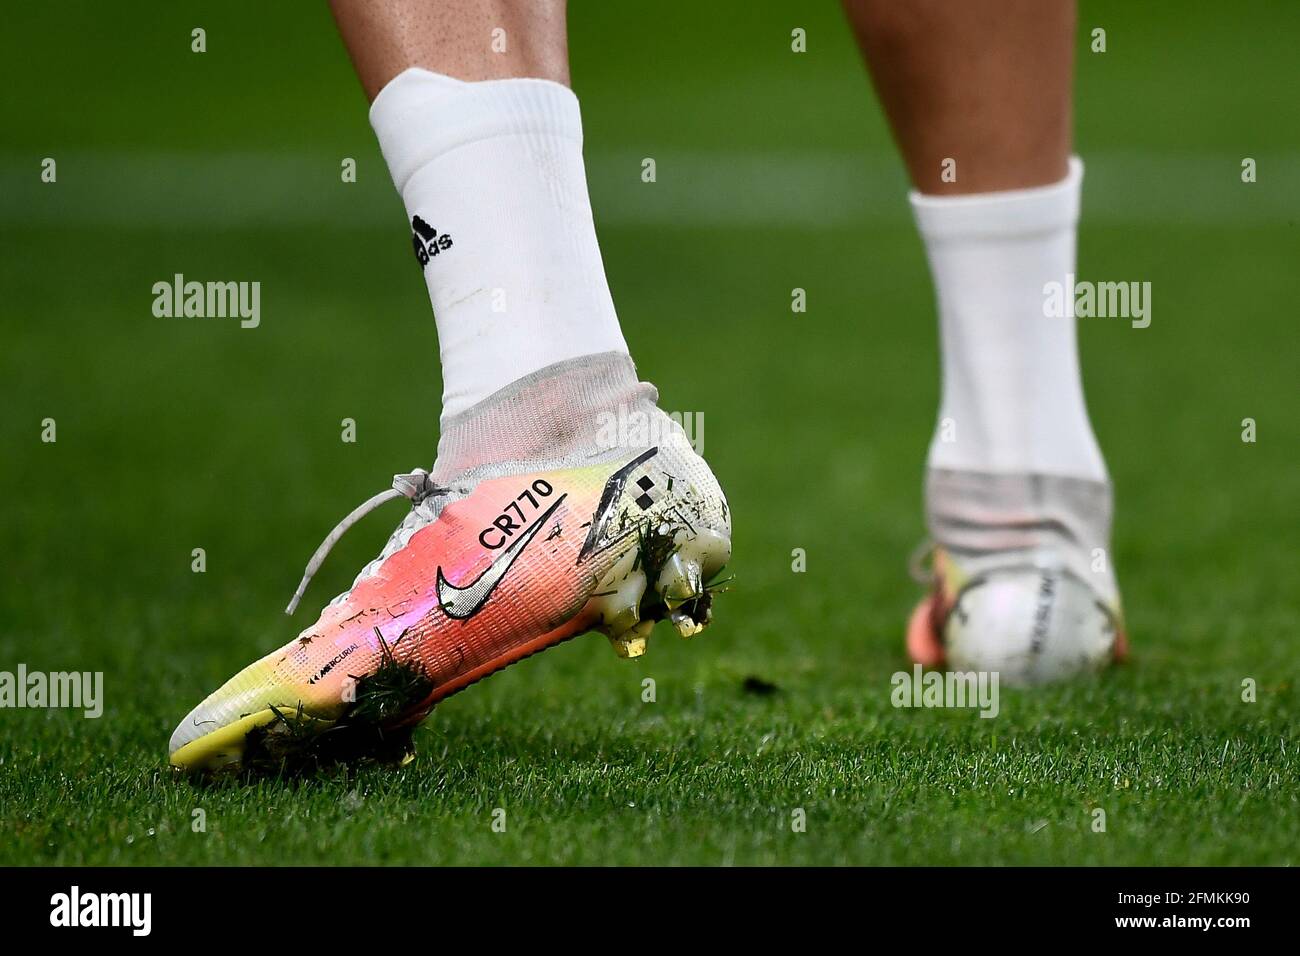 Turin, Italie. 09 mai 2021. Des chaussures Nike Mercurial personnalisées  avec l'inscription « CR770 » de Cristiano Ronaldo de Juventus FC sont  visibles lors de l'échauffement avant le match de football Serie